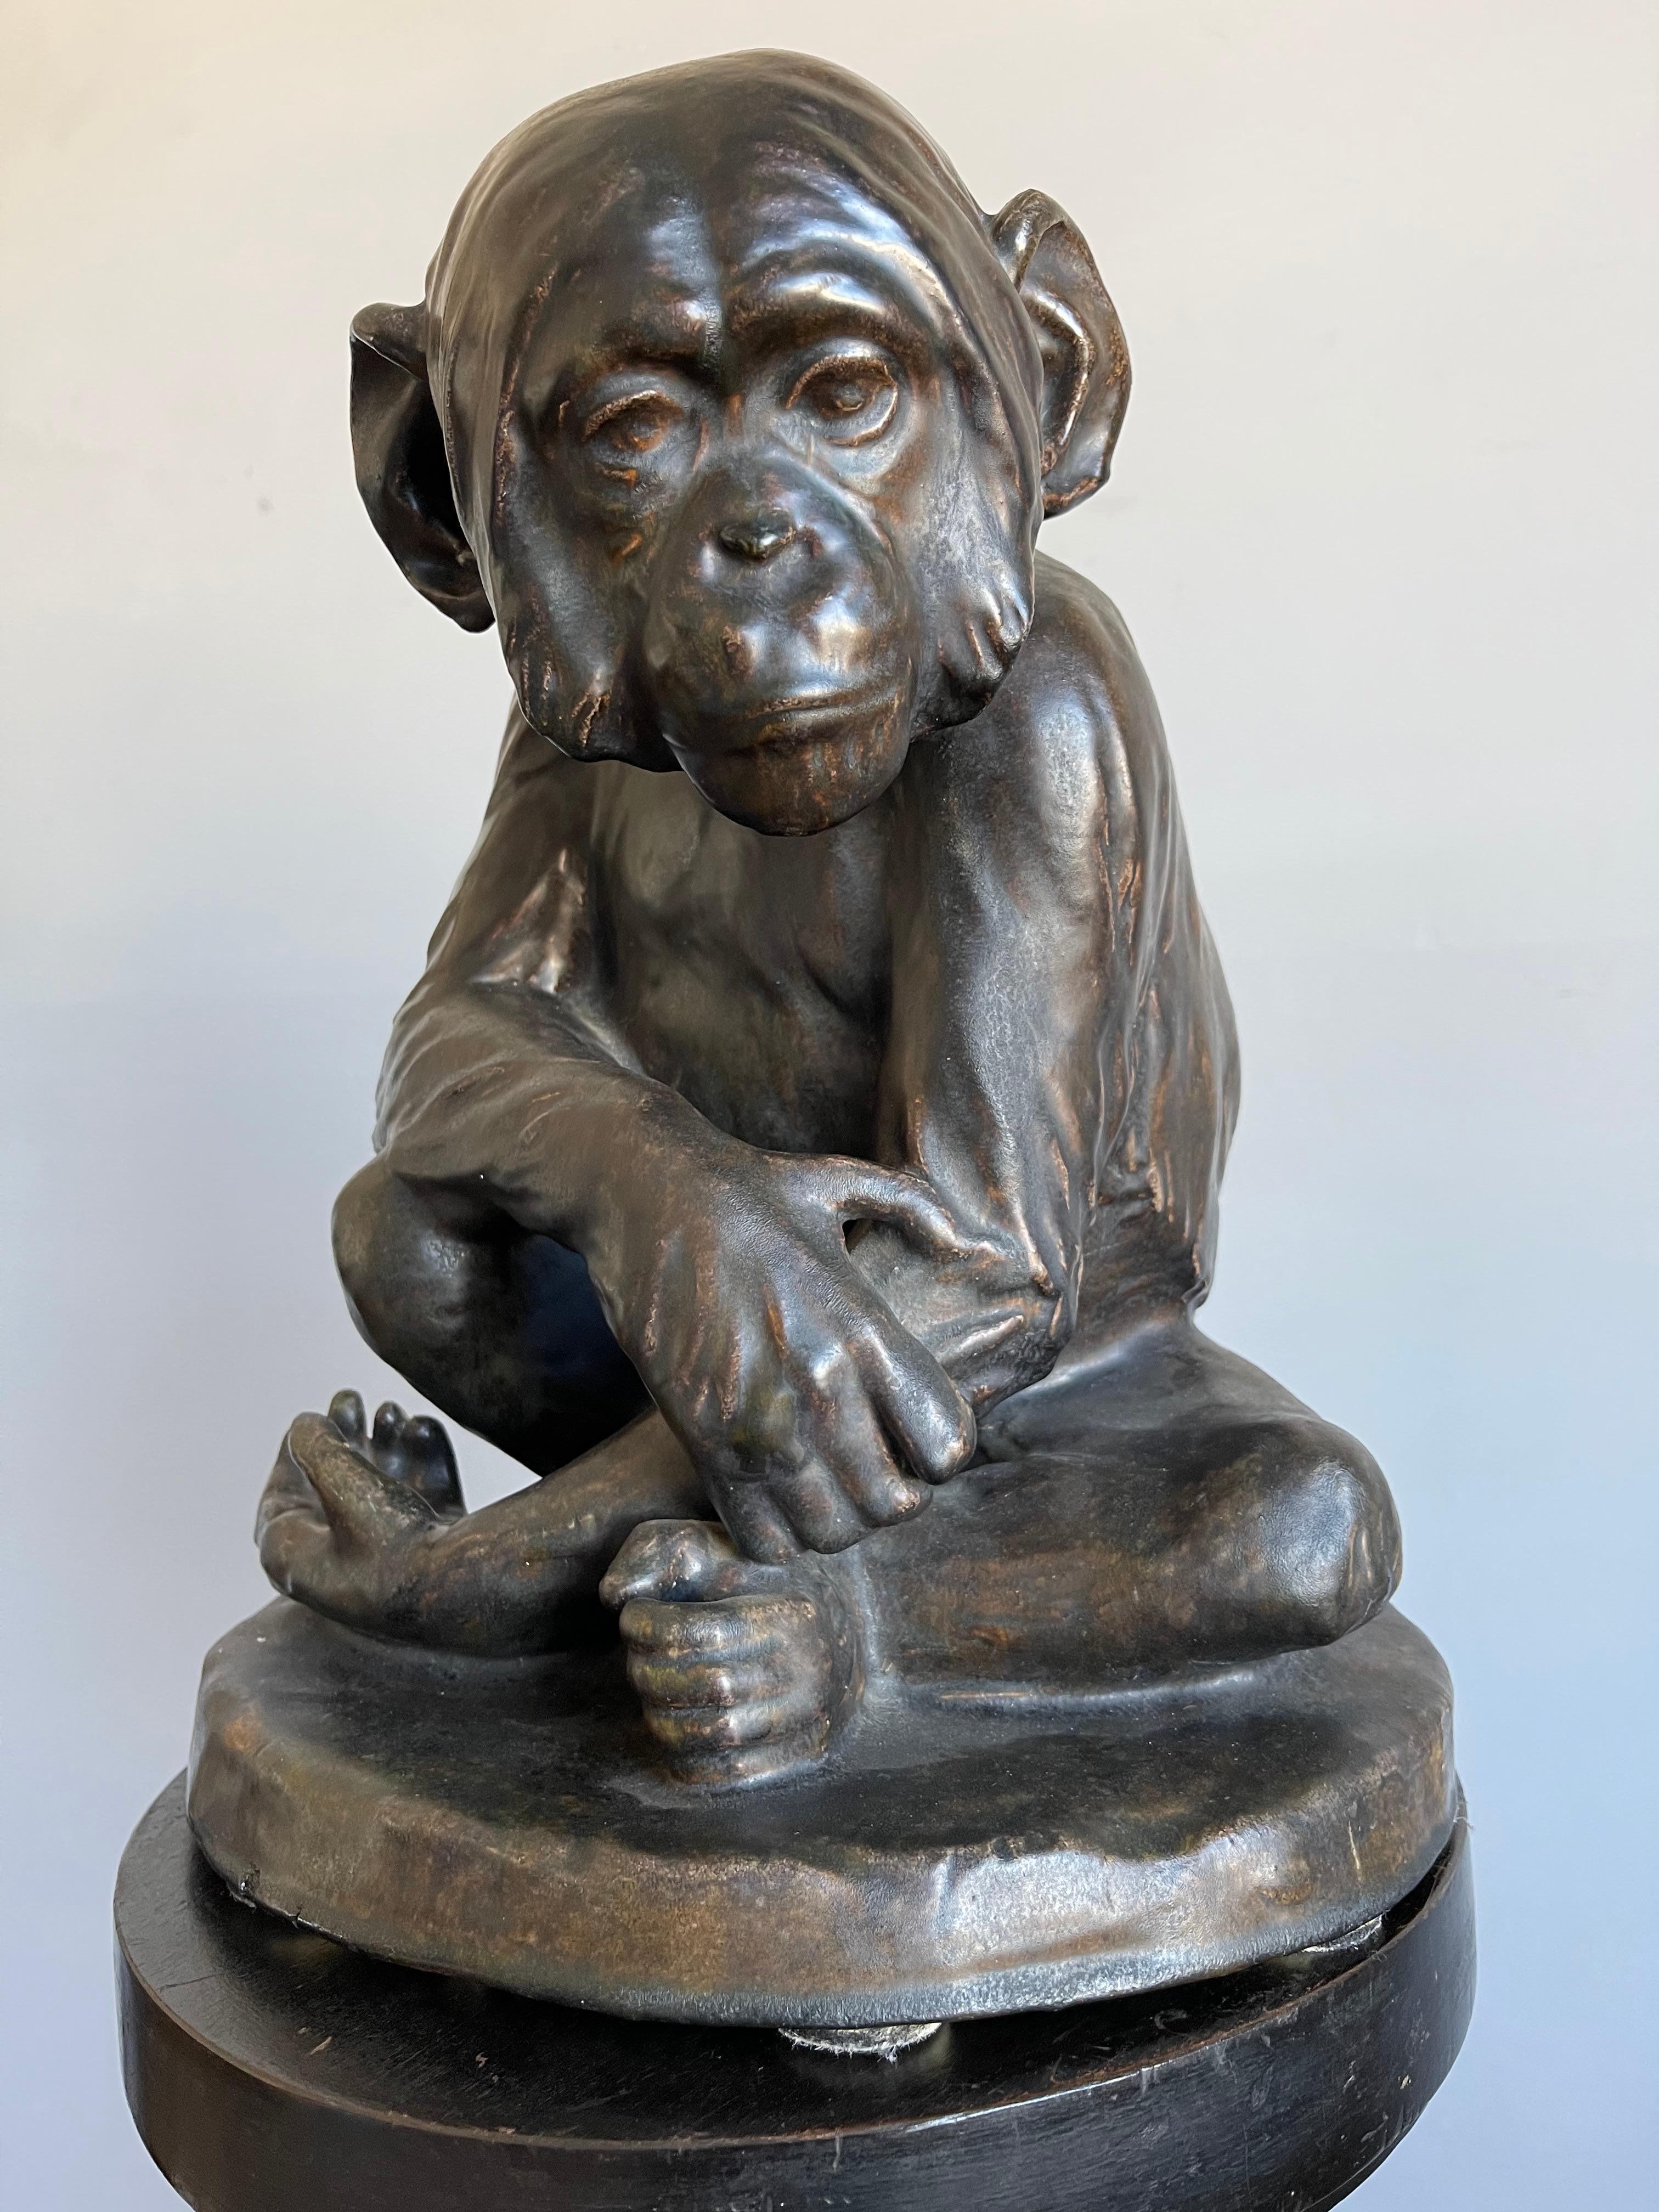 Wunderschöne und große original antike Skulptur eines schönen Schimpansen / Affen.

Im Laufe der Jahre haben wir eine ganze Reihe schöner Qualitätsskulpturen aus allen möglichen Materialien besessen und verkauft, aber wir hatten noch nie das